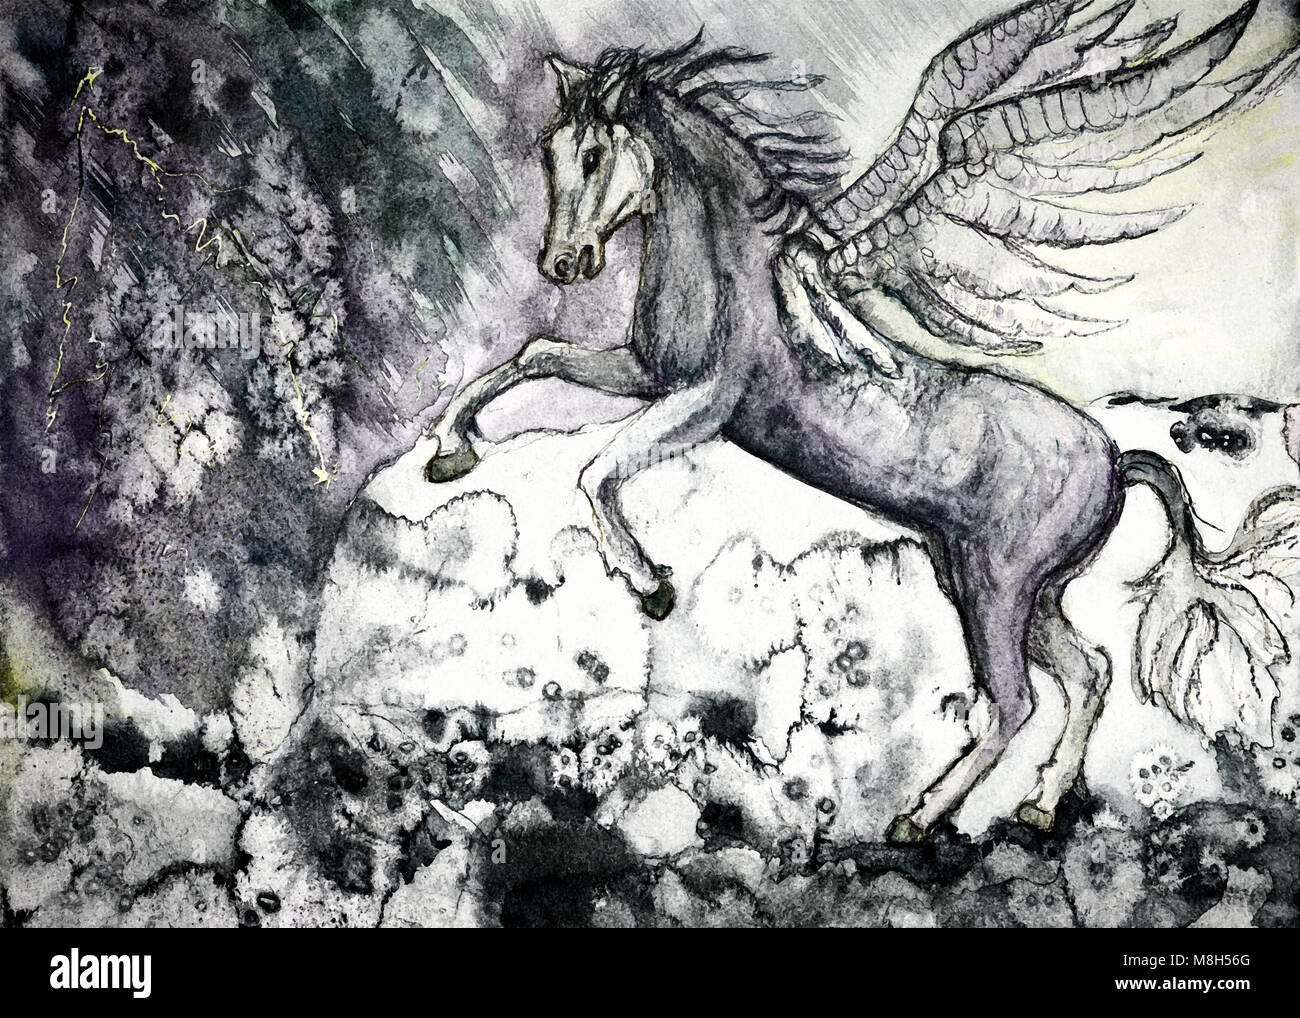 Farbige Zeichnung der weißen Pferd der Apokalypse. Die Tupfen Technik in der Nähe der Kanten gibt einen Weichzeichner Effekt aufgrund der veränderten Oberflächenrauheit Stockfoto